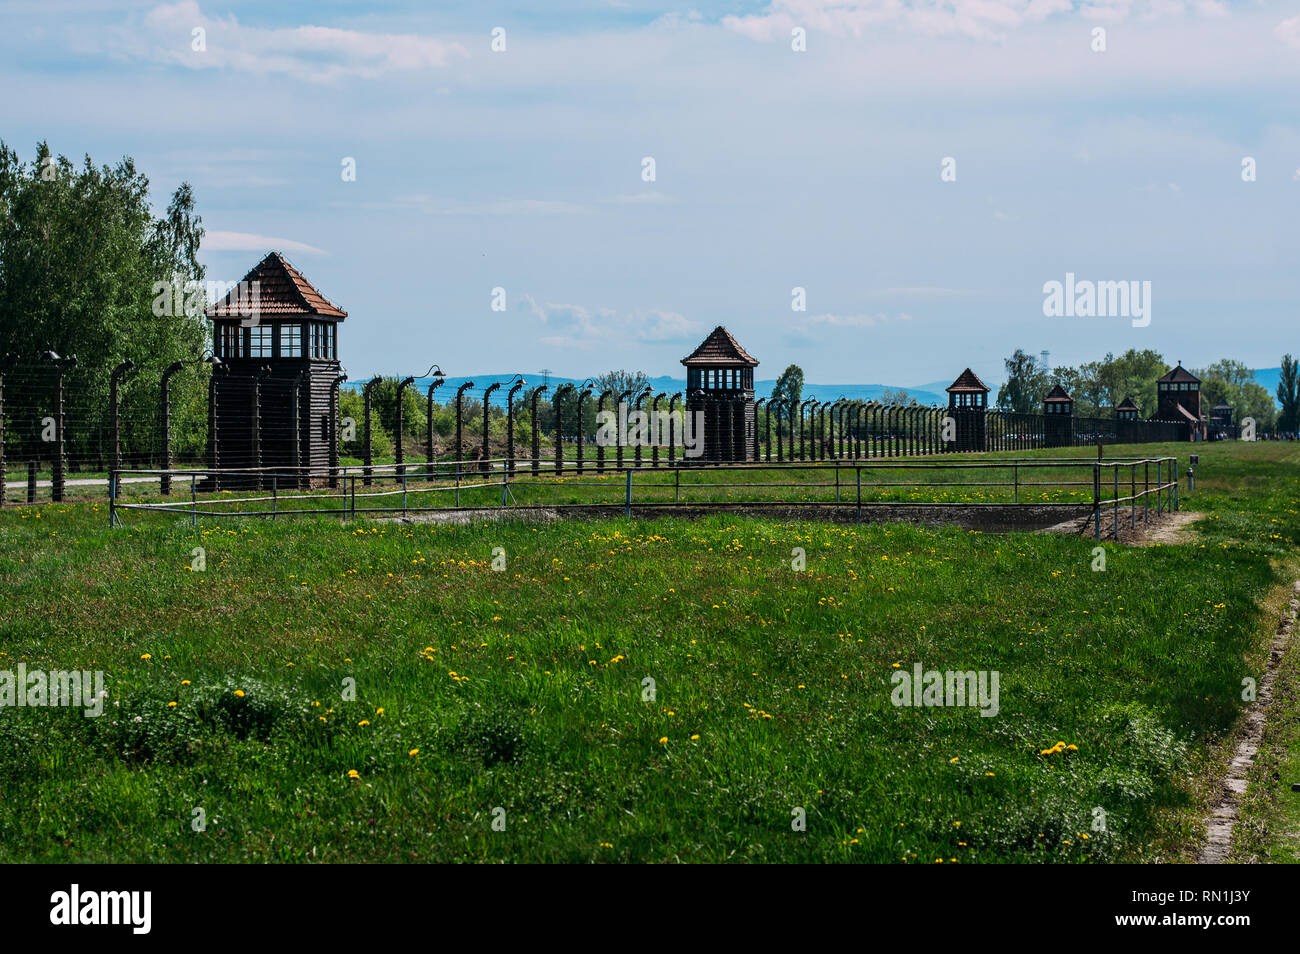 Tours de garde d'Auschwitz - Birkenau camp de concentration près de Cracovie, Pologne Banque D'Images